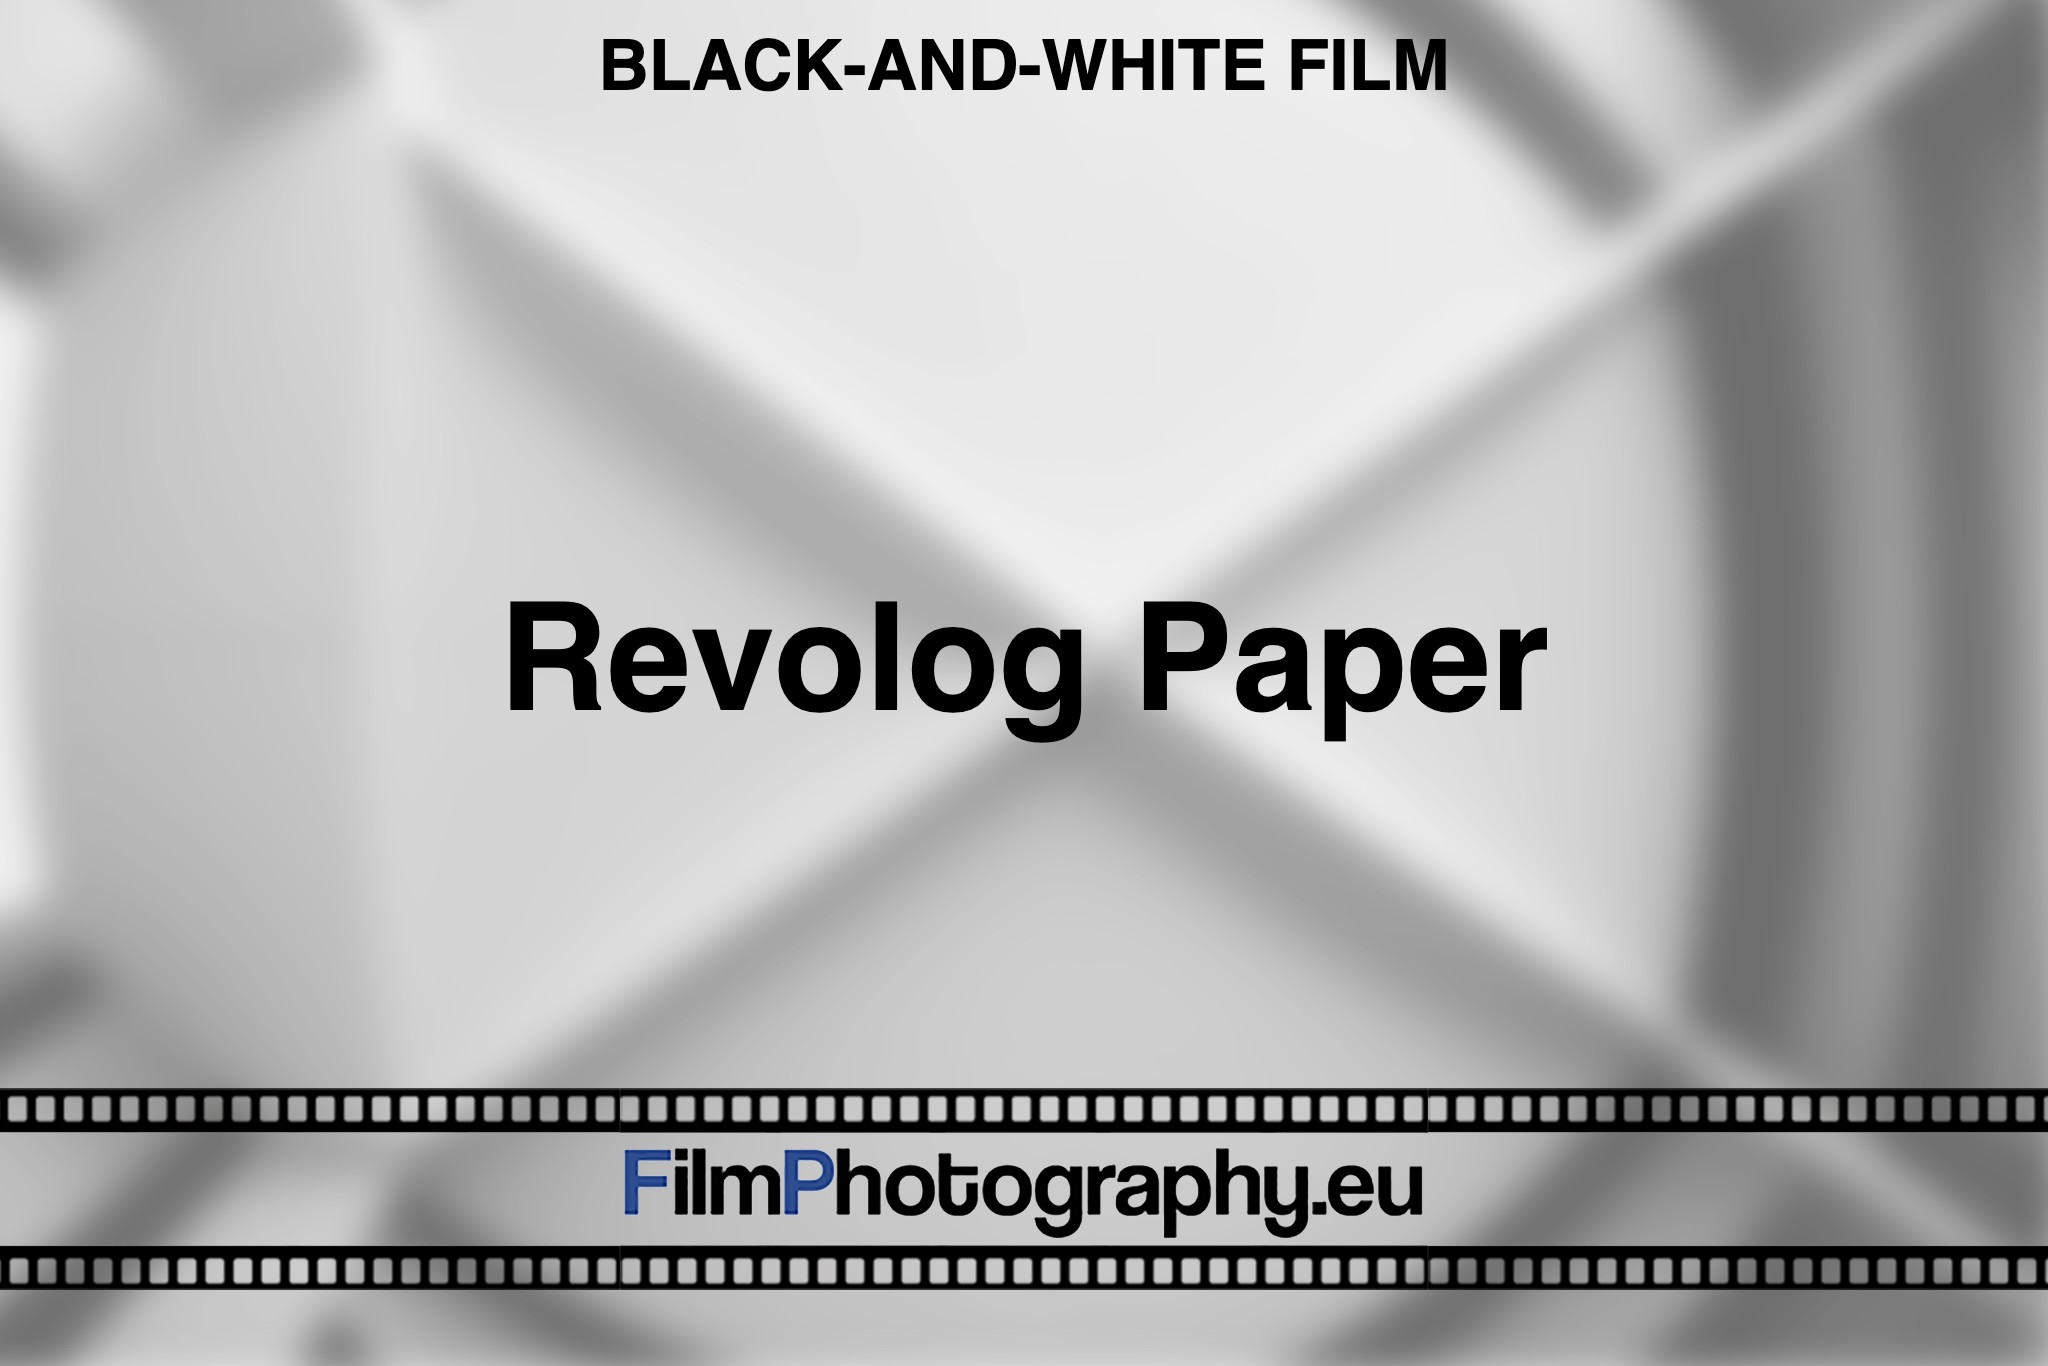 Revolog-Paper-Black-and-white-film-bnv